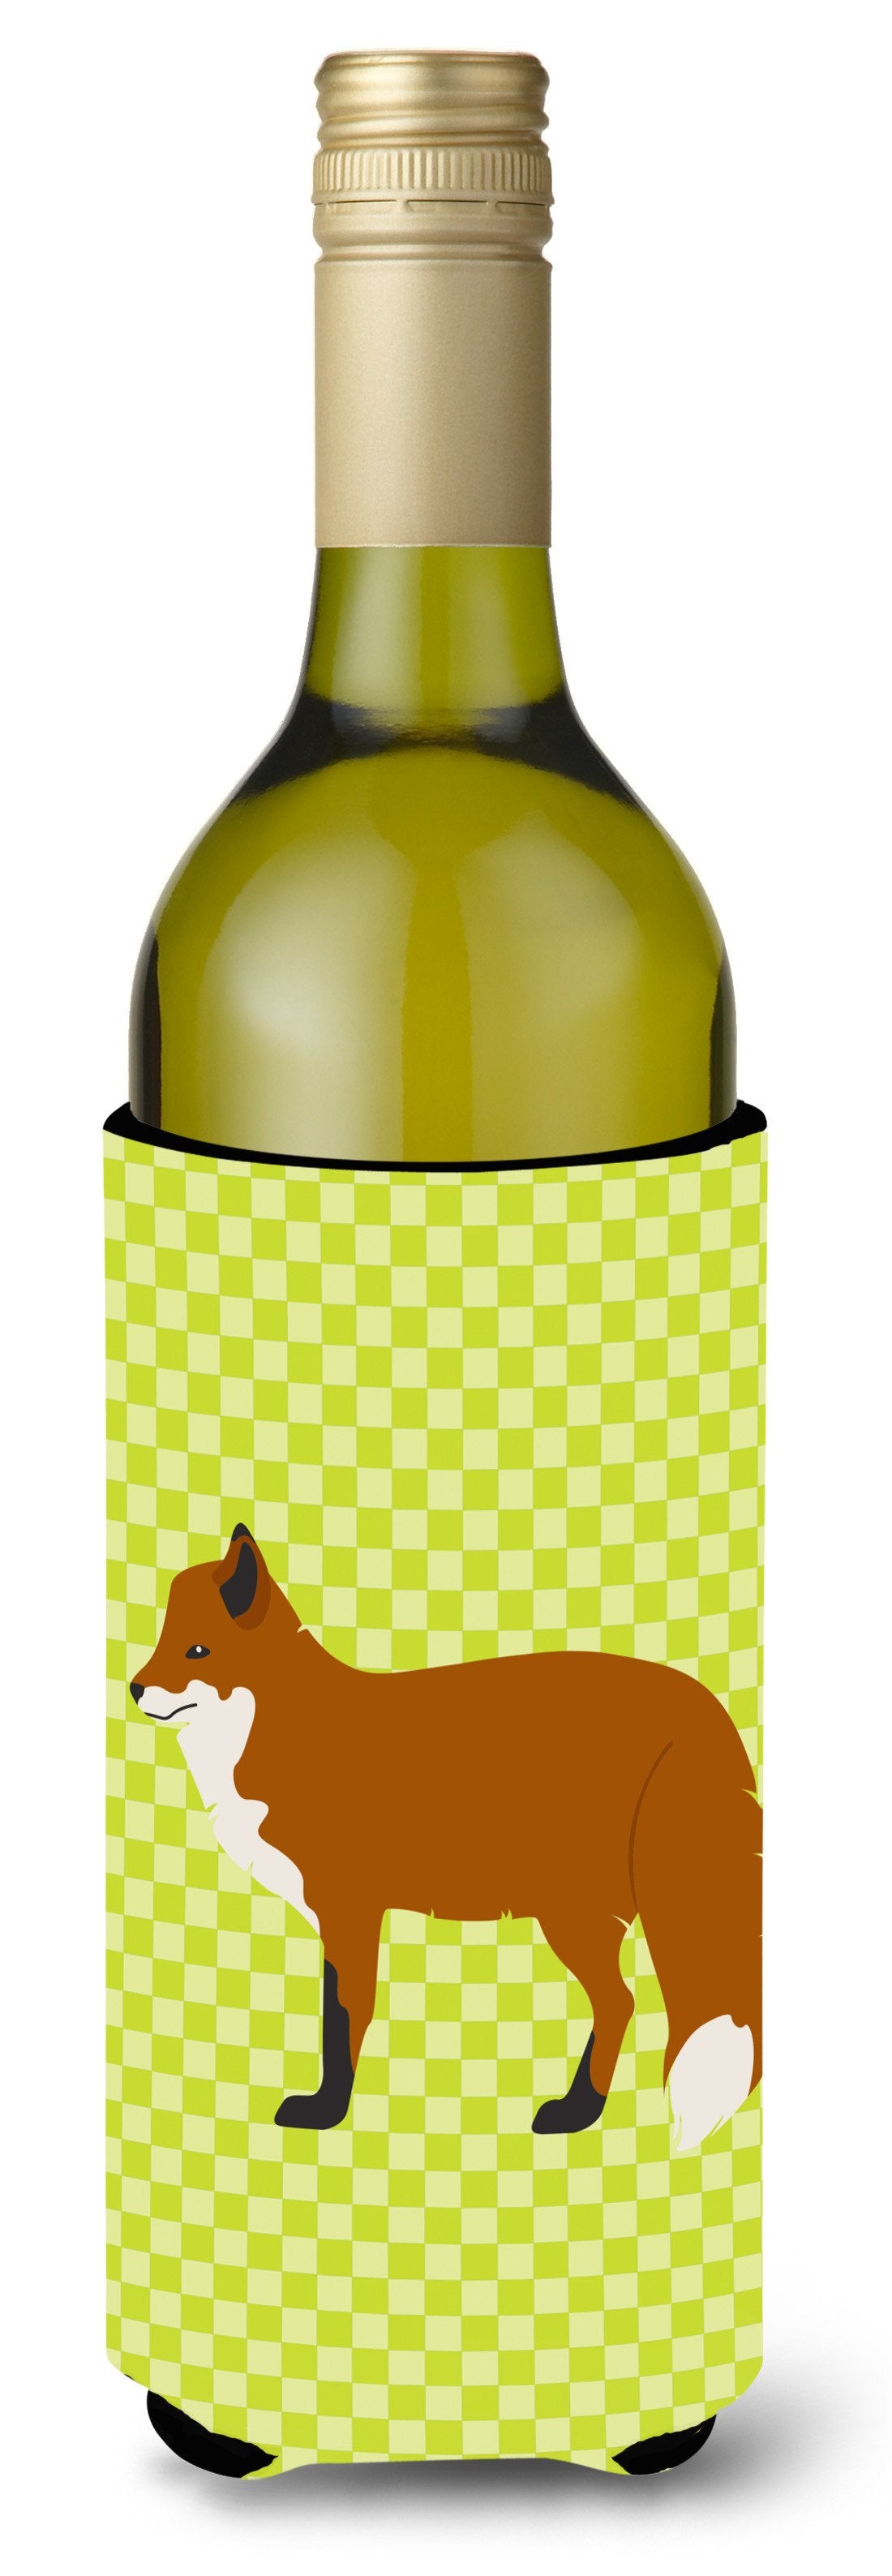 Red Fox Green Wine Bottle Beverge Insulator Hugger BB7702LITERK by Caroline's Treasures